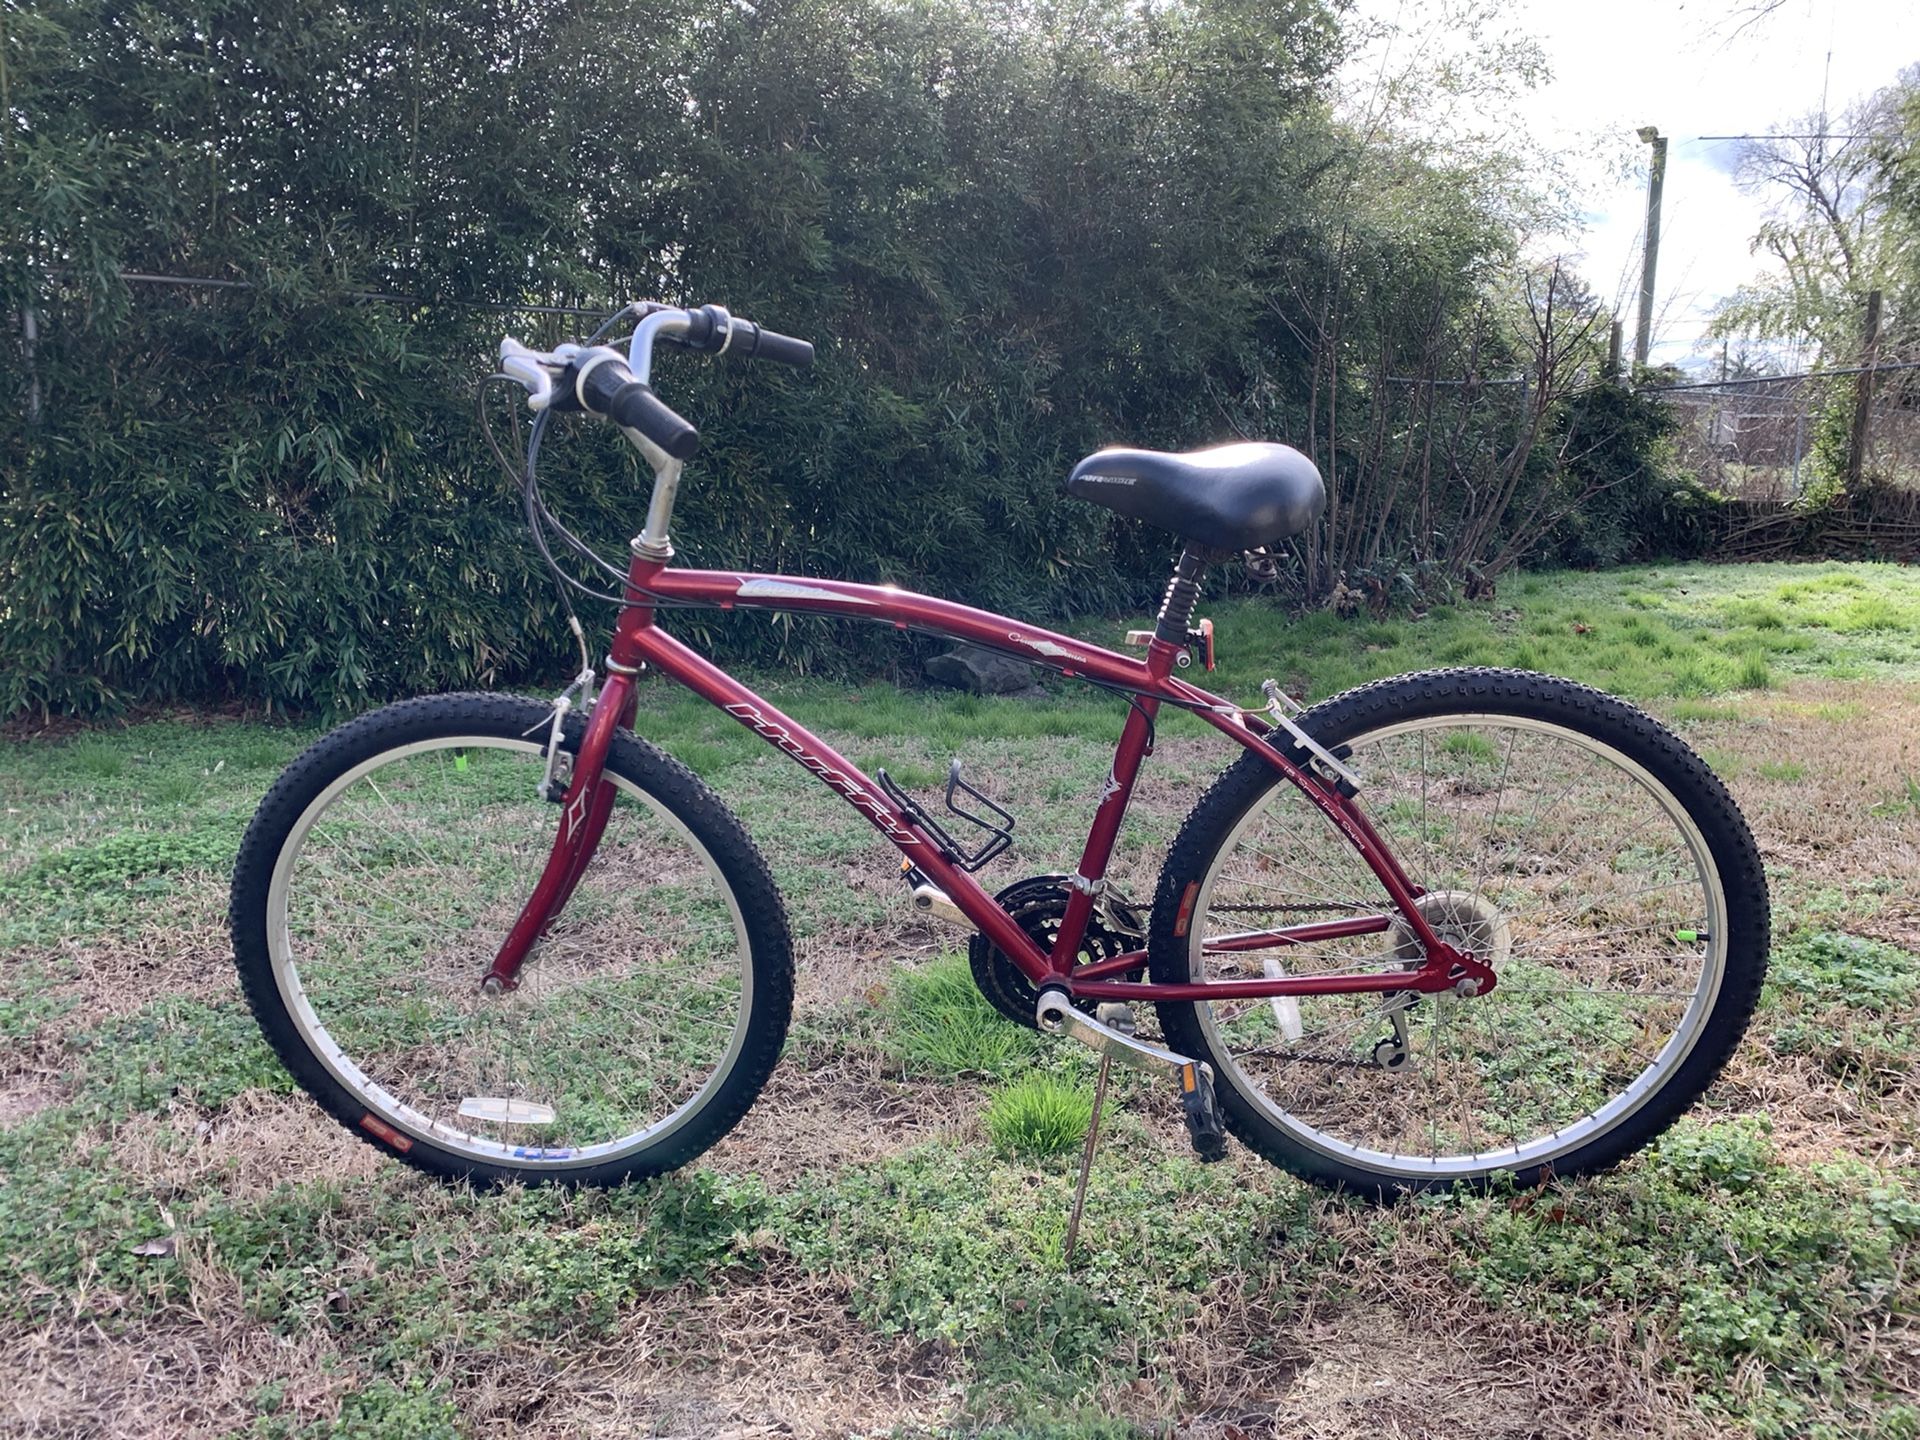 26” Huffy Verona mountain/cruiser bike